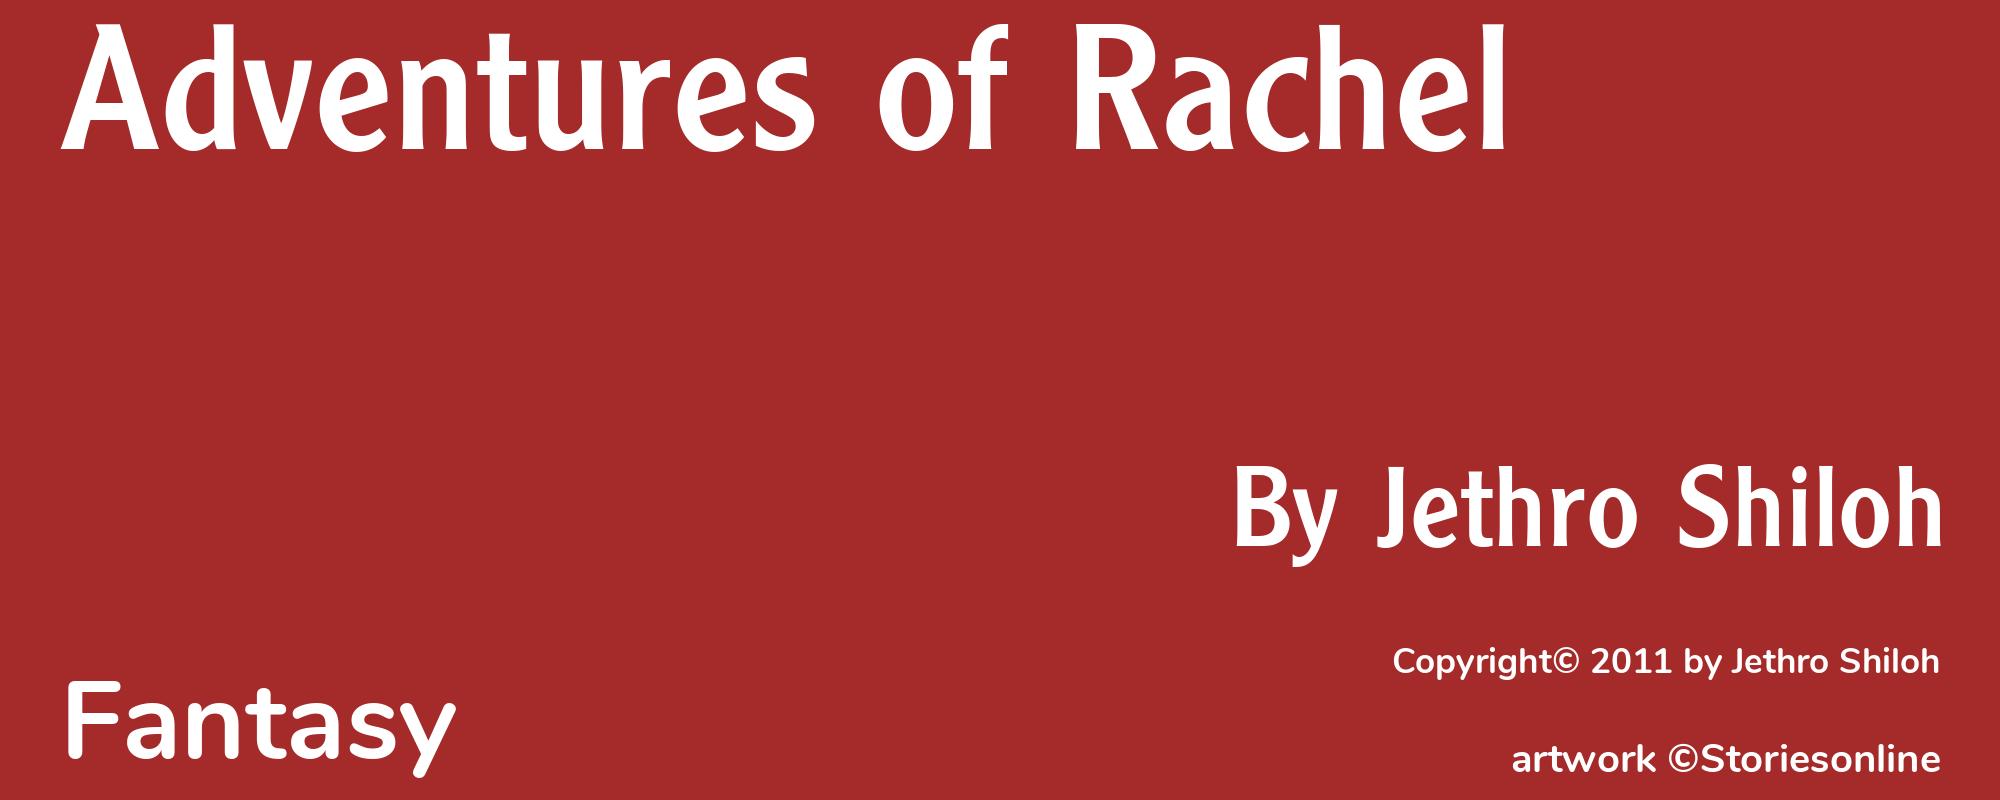 Adventures of Rachel - Cover